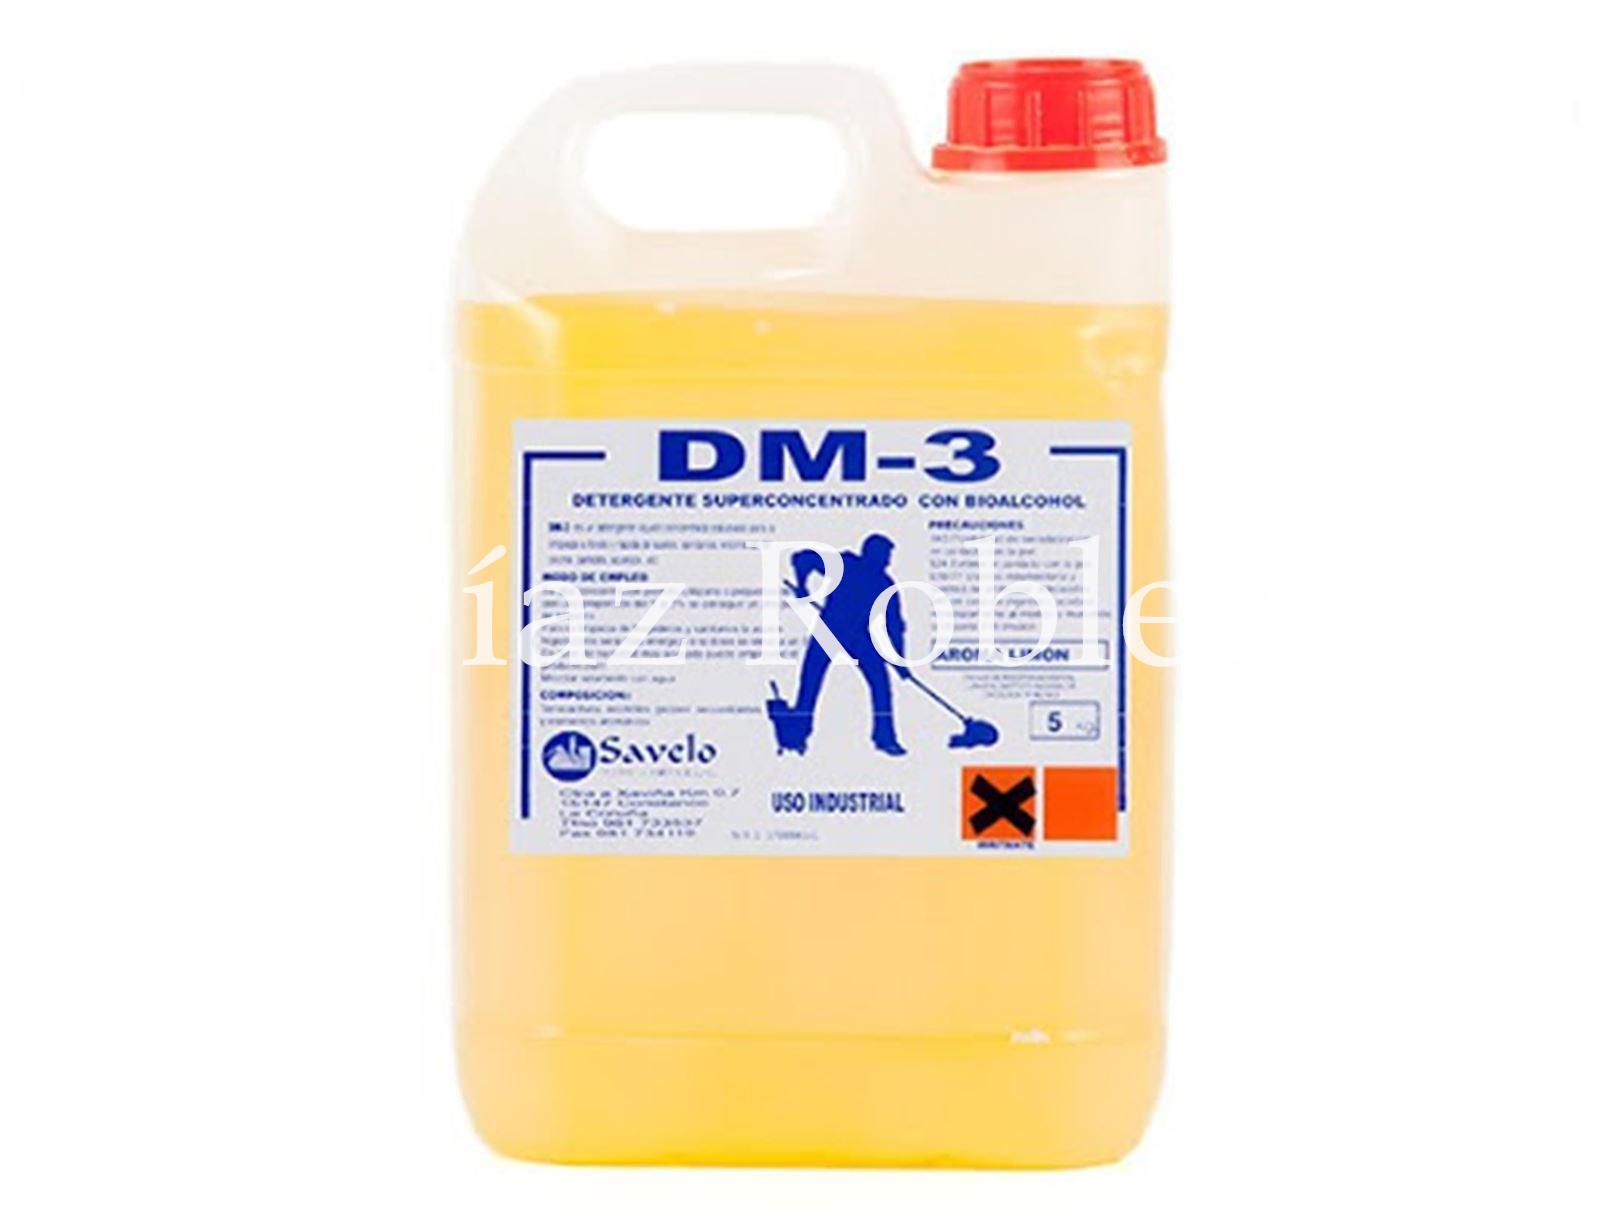 Detergente Fregasuelos DM-3. Garrafas de 5l., 10l. y 25l. - Imagen 2